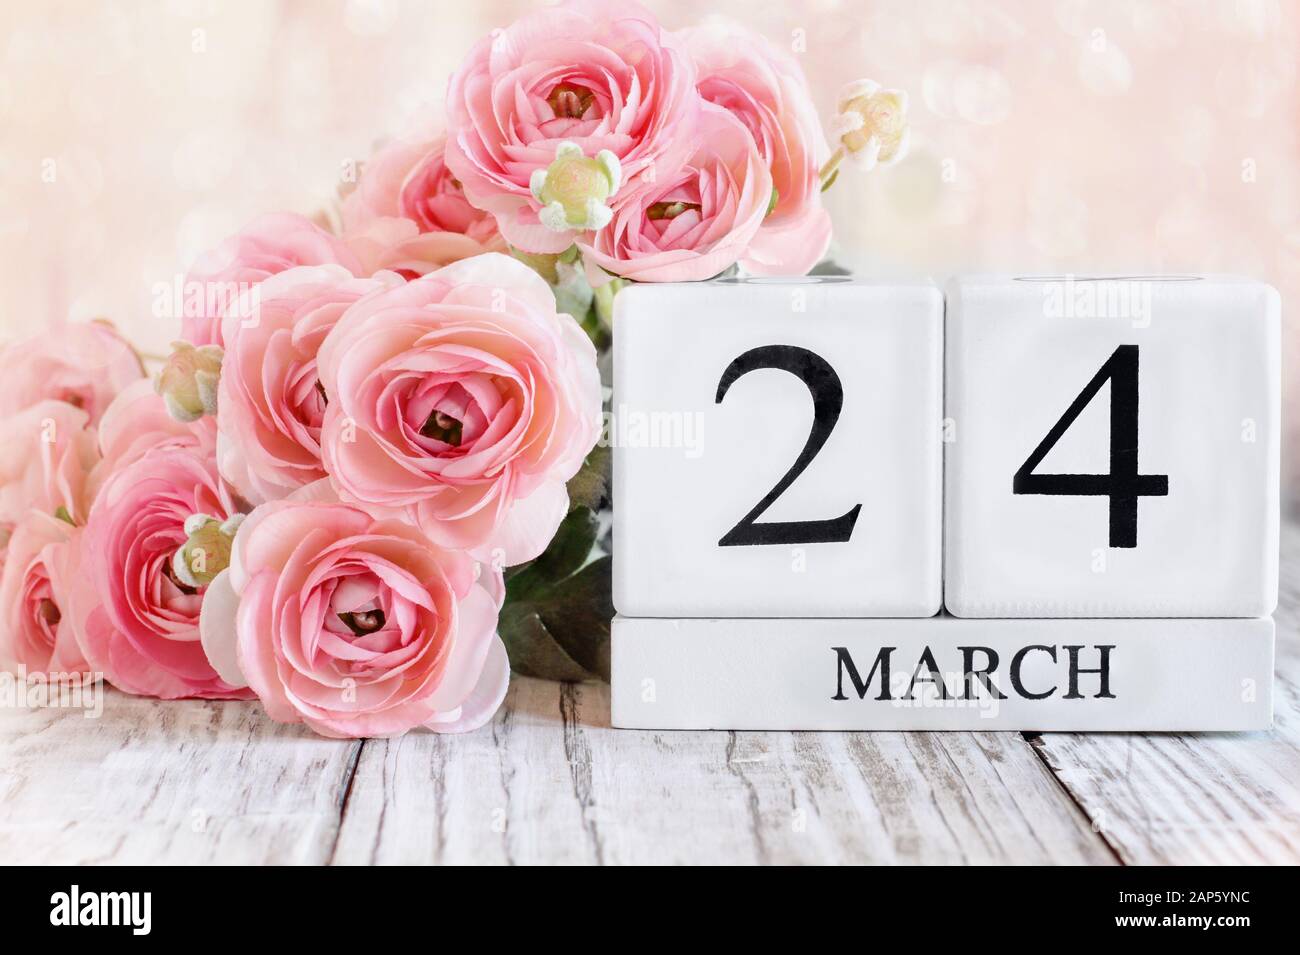 Blocs calendrier en bois blanc avec la date du 24 mars et fleurs roses de ranunculus sur une table en bois. Mise au point sélective avec arrière-plan flou. Banque D'Images